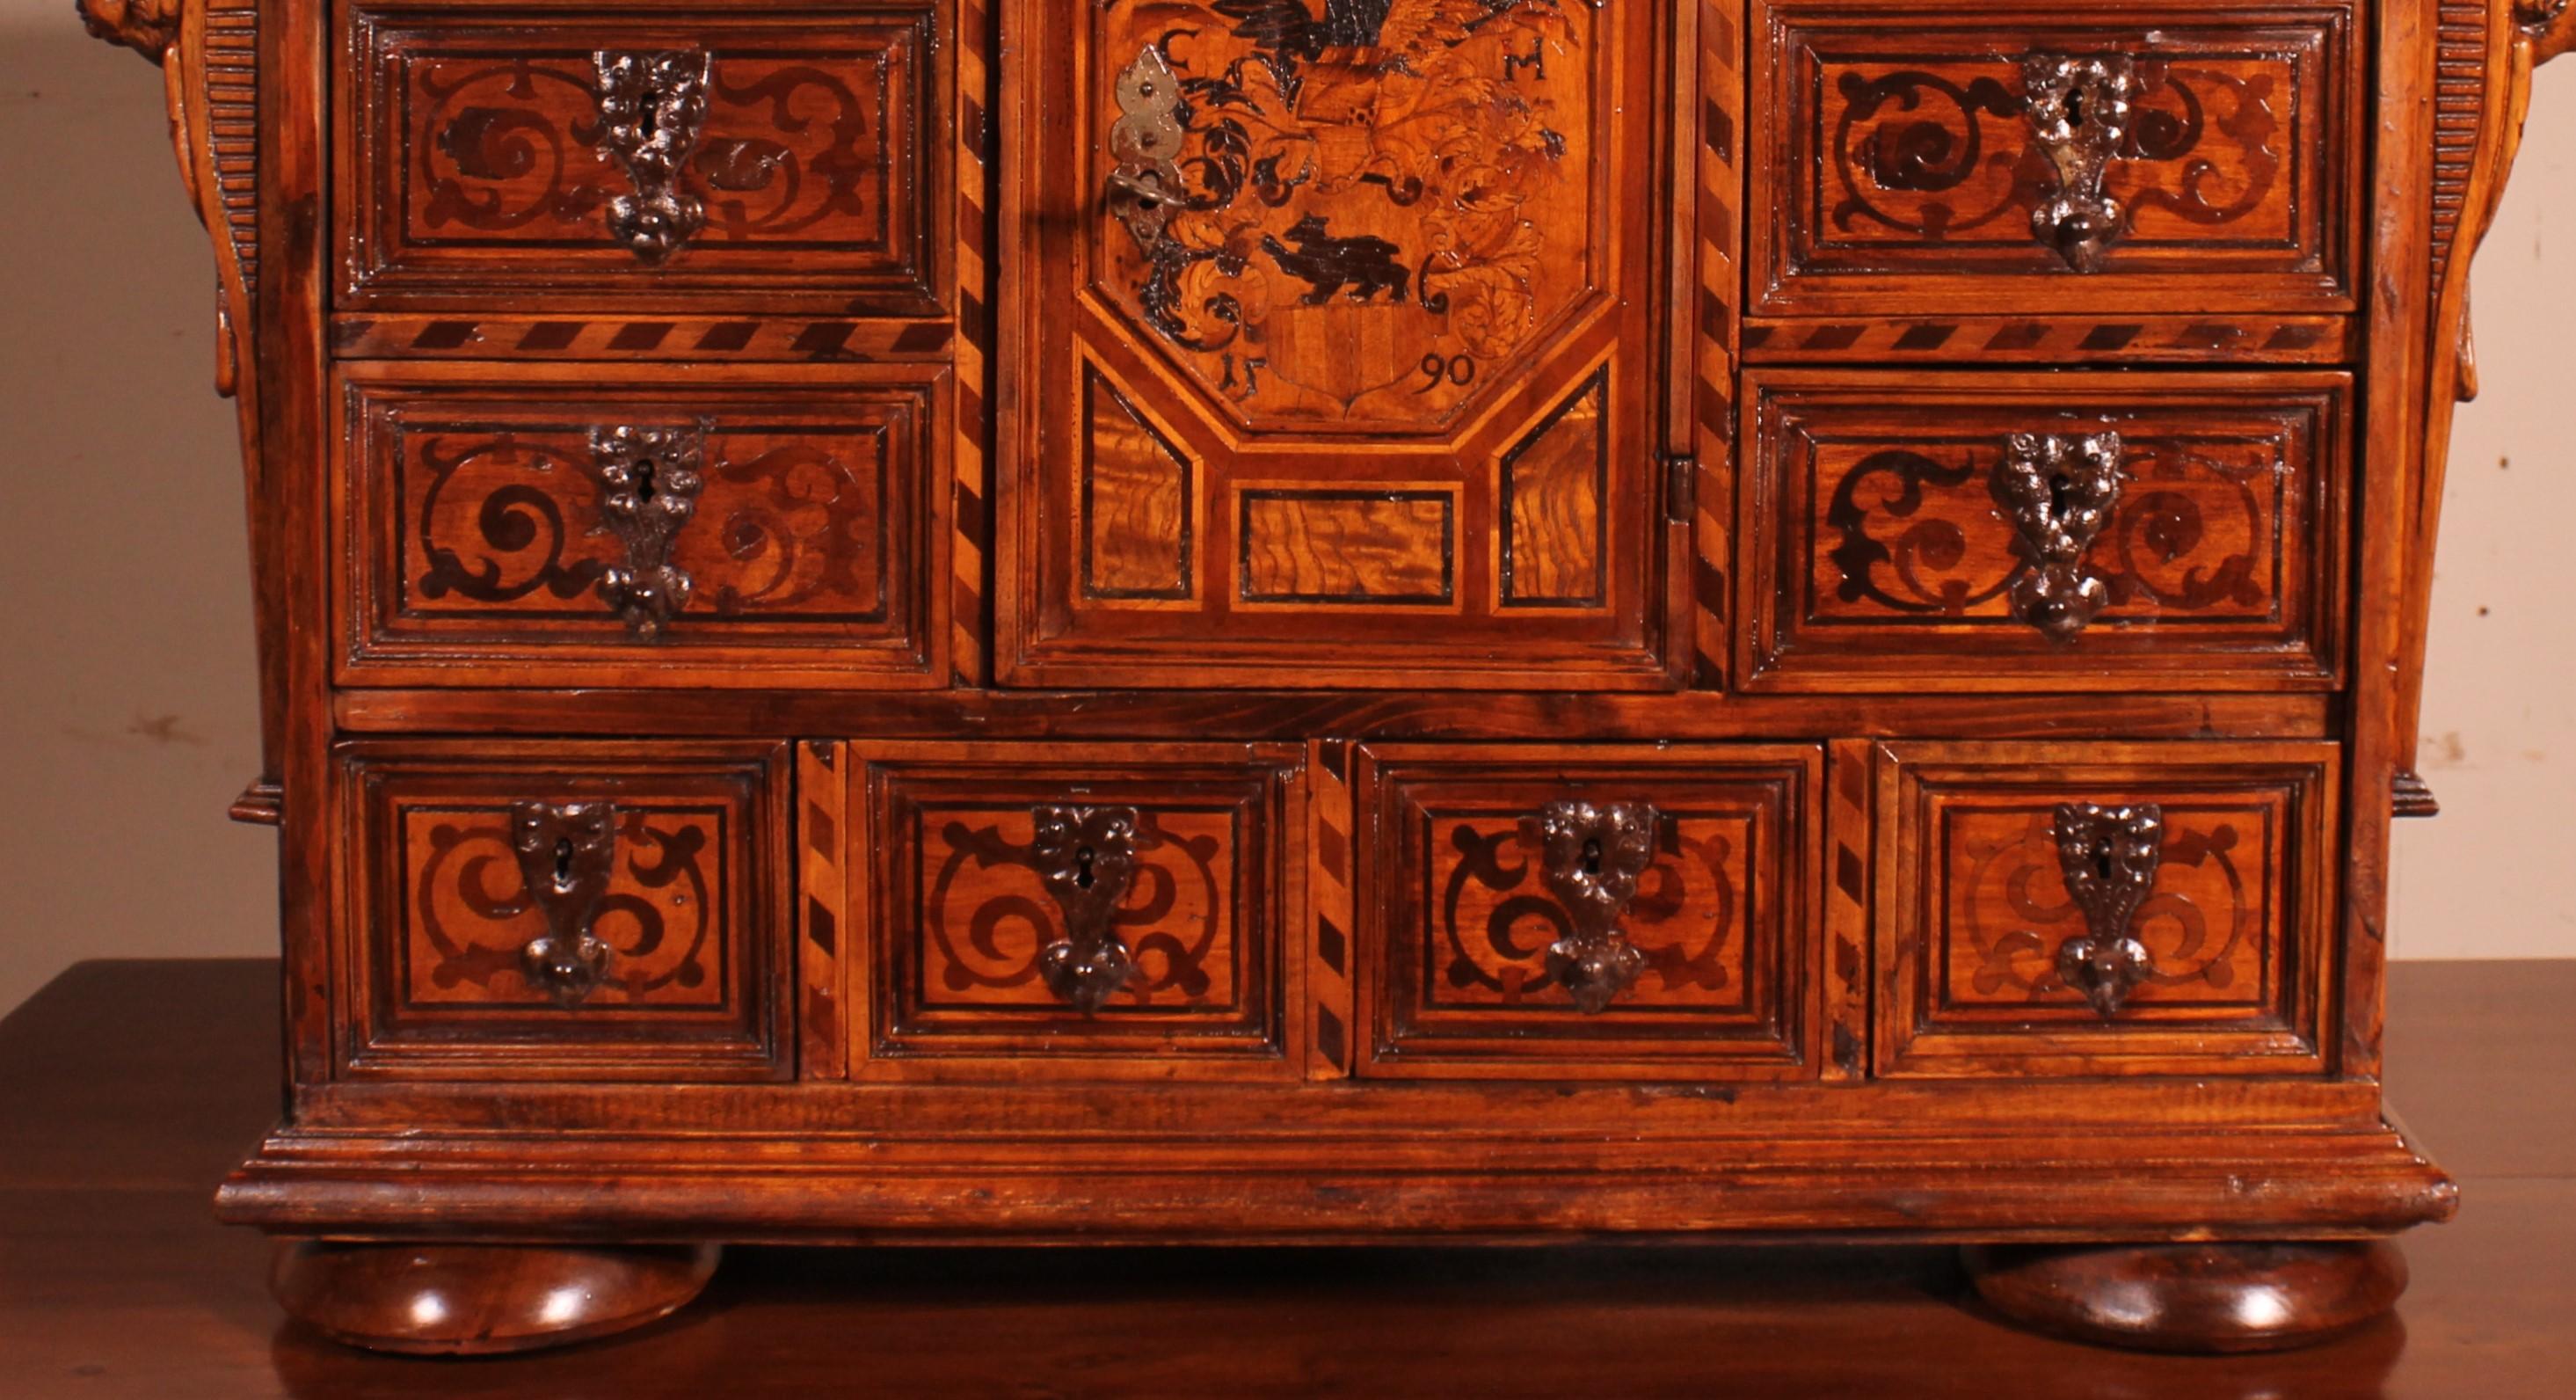 Très belle armoire allemande probablement en forêt noire datée de 1590 en noyer.

Les tiroirs ainsi que la porte ont de superbes serrures ciselées. Il s'agit d'un travail monumental et d'un signe de la belle provenance du cabinet.

La porte est